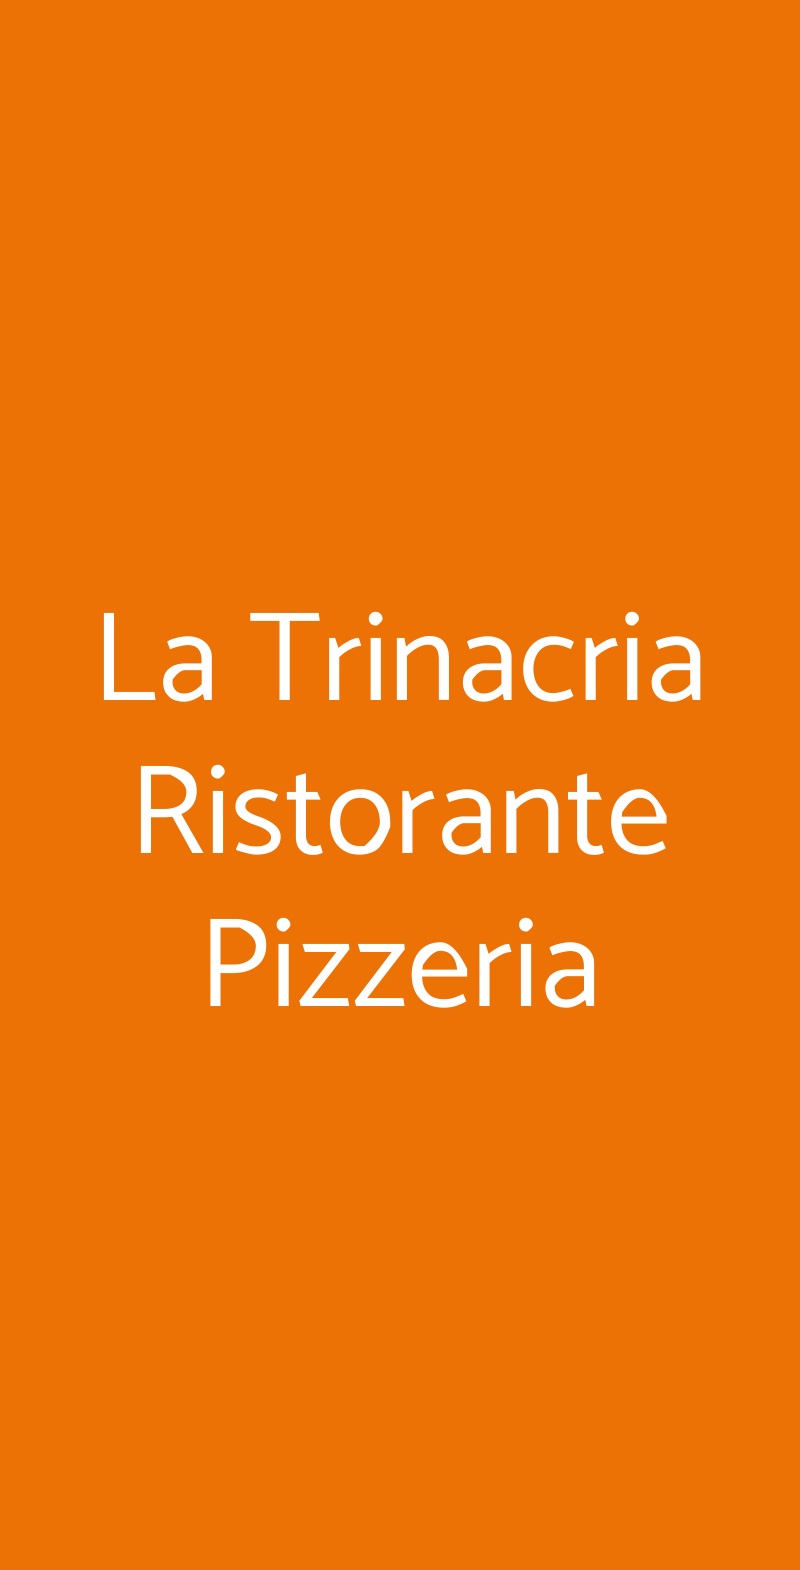 La Trinacria Ristorante Pizzeria Mazara del Vallo menù 1 pagina